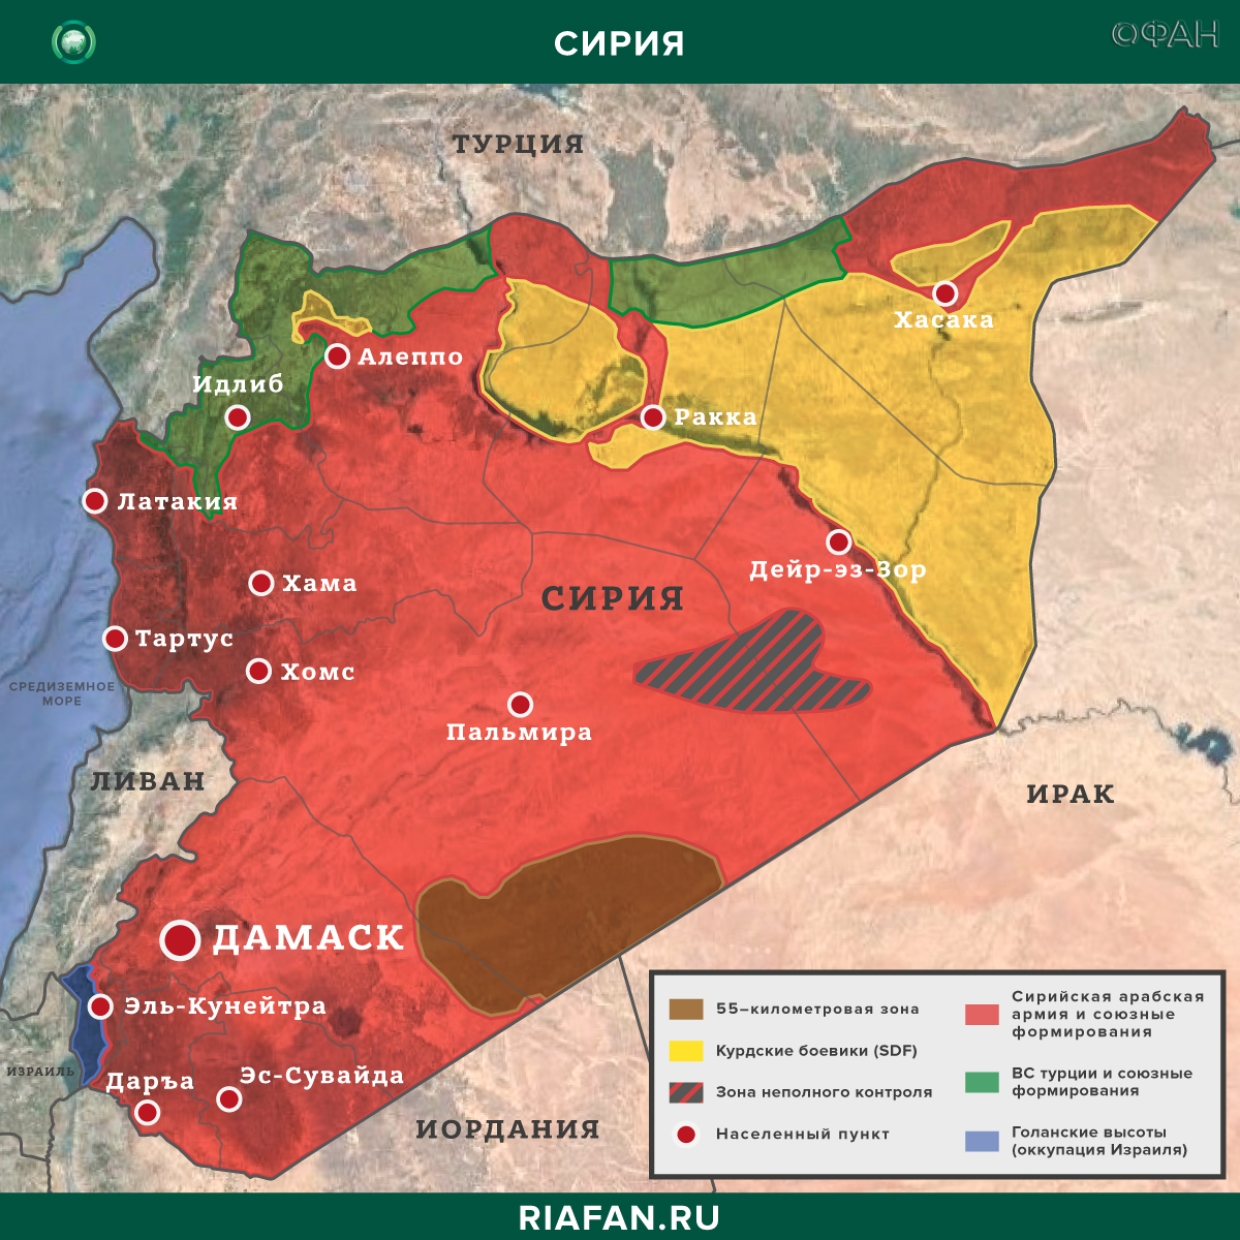 Nouvelles de Syrie 16 Février 07.00: совместные учения армии США и курдских боевиков в Дейр-эз-Зоре, сирийская армия освободила предместья Алеппо